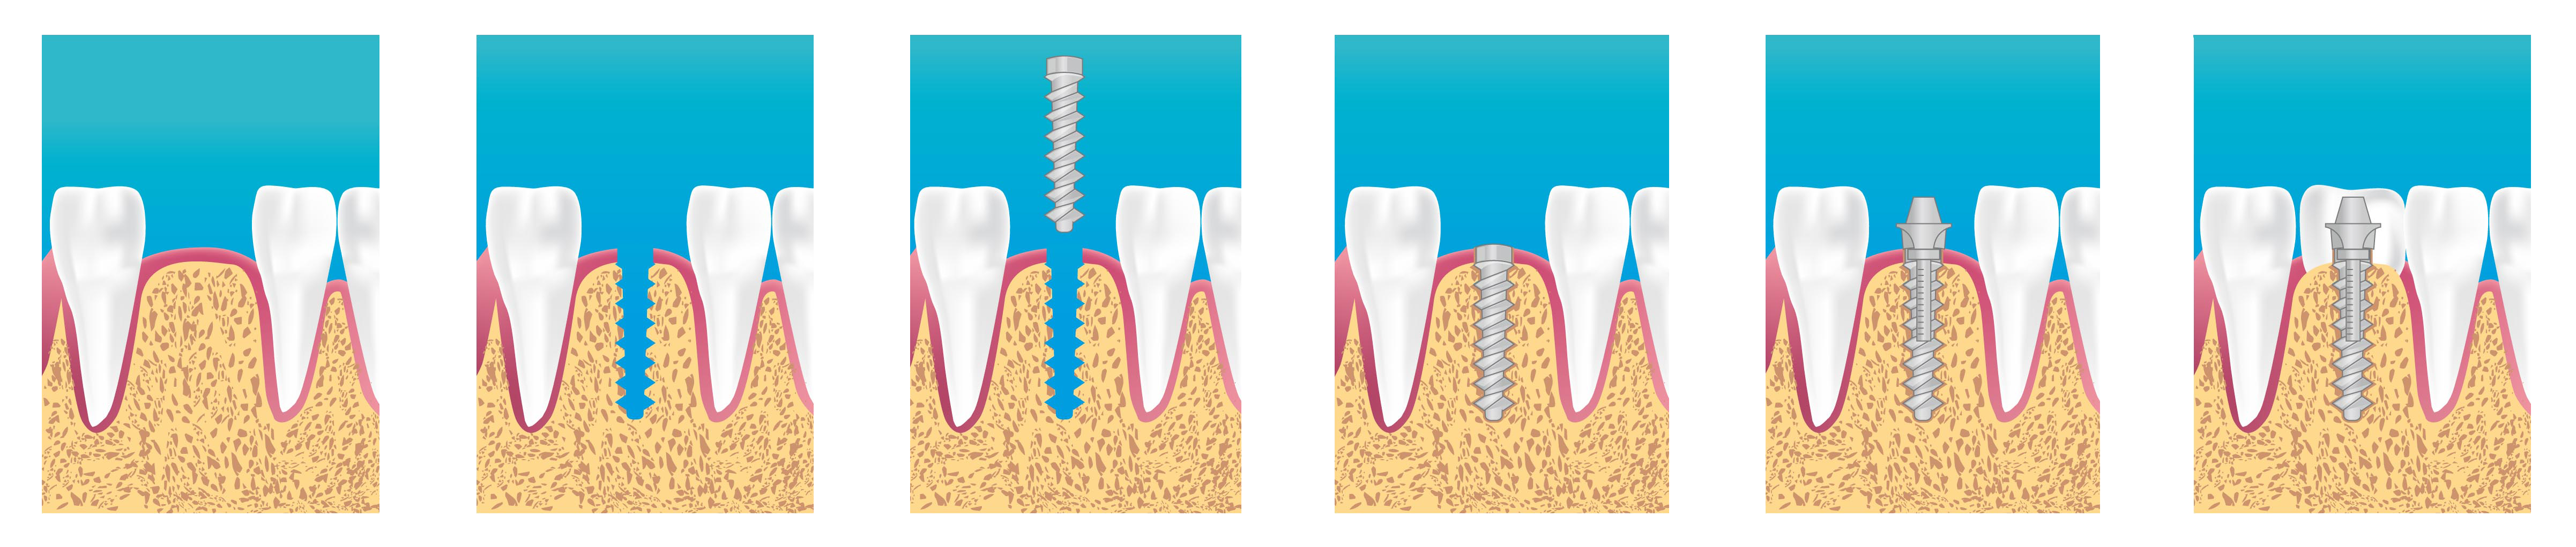 Зубы импланты поэтапно. Одноэтапная дентальная имплантация. Двухэтапная имплантация. Эндооссальная (внутрикостная) имплантация. Классическая двухэтапная имплантация зубов.